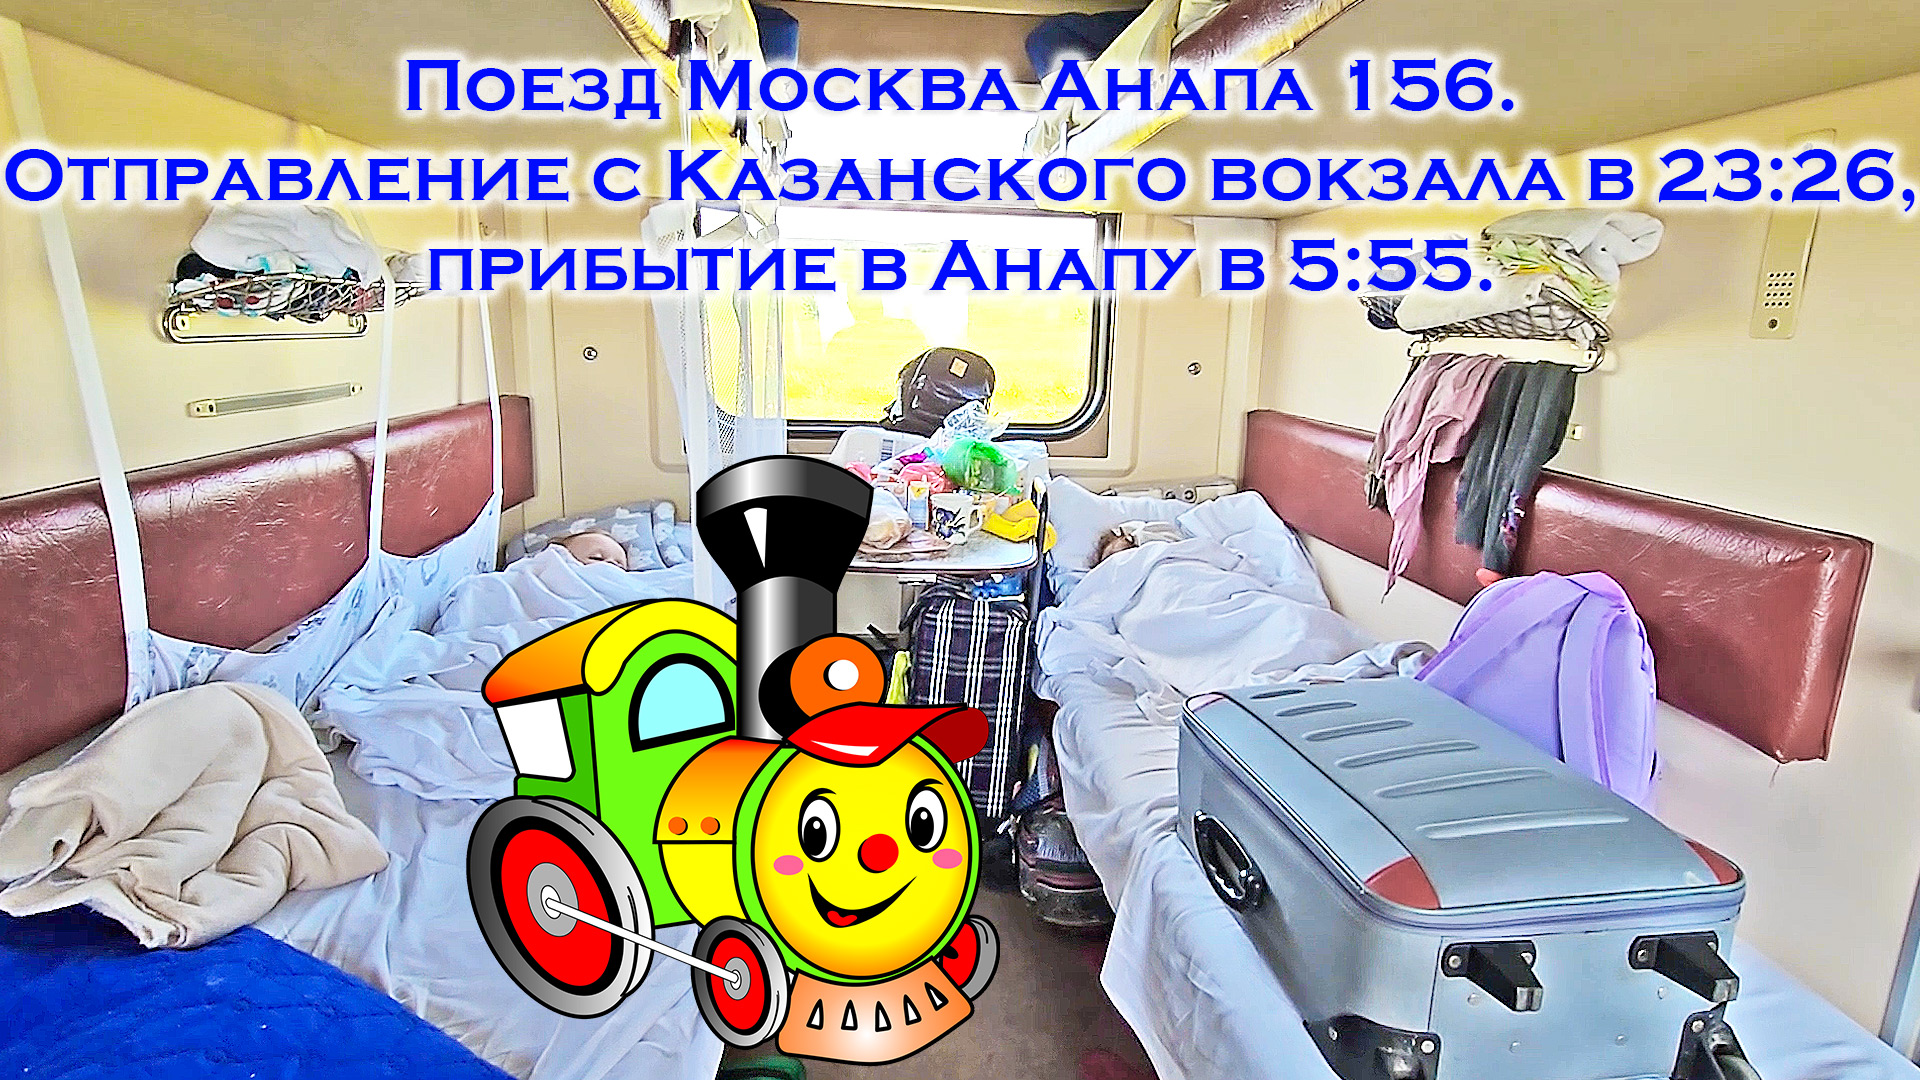 Поезд Москва Анапа 156 отправляется с Казанского вокзала в 23:26 и прибывает в Анапу в 5:55. Едем!